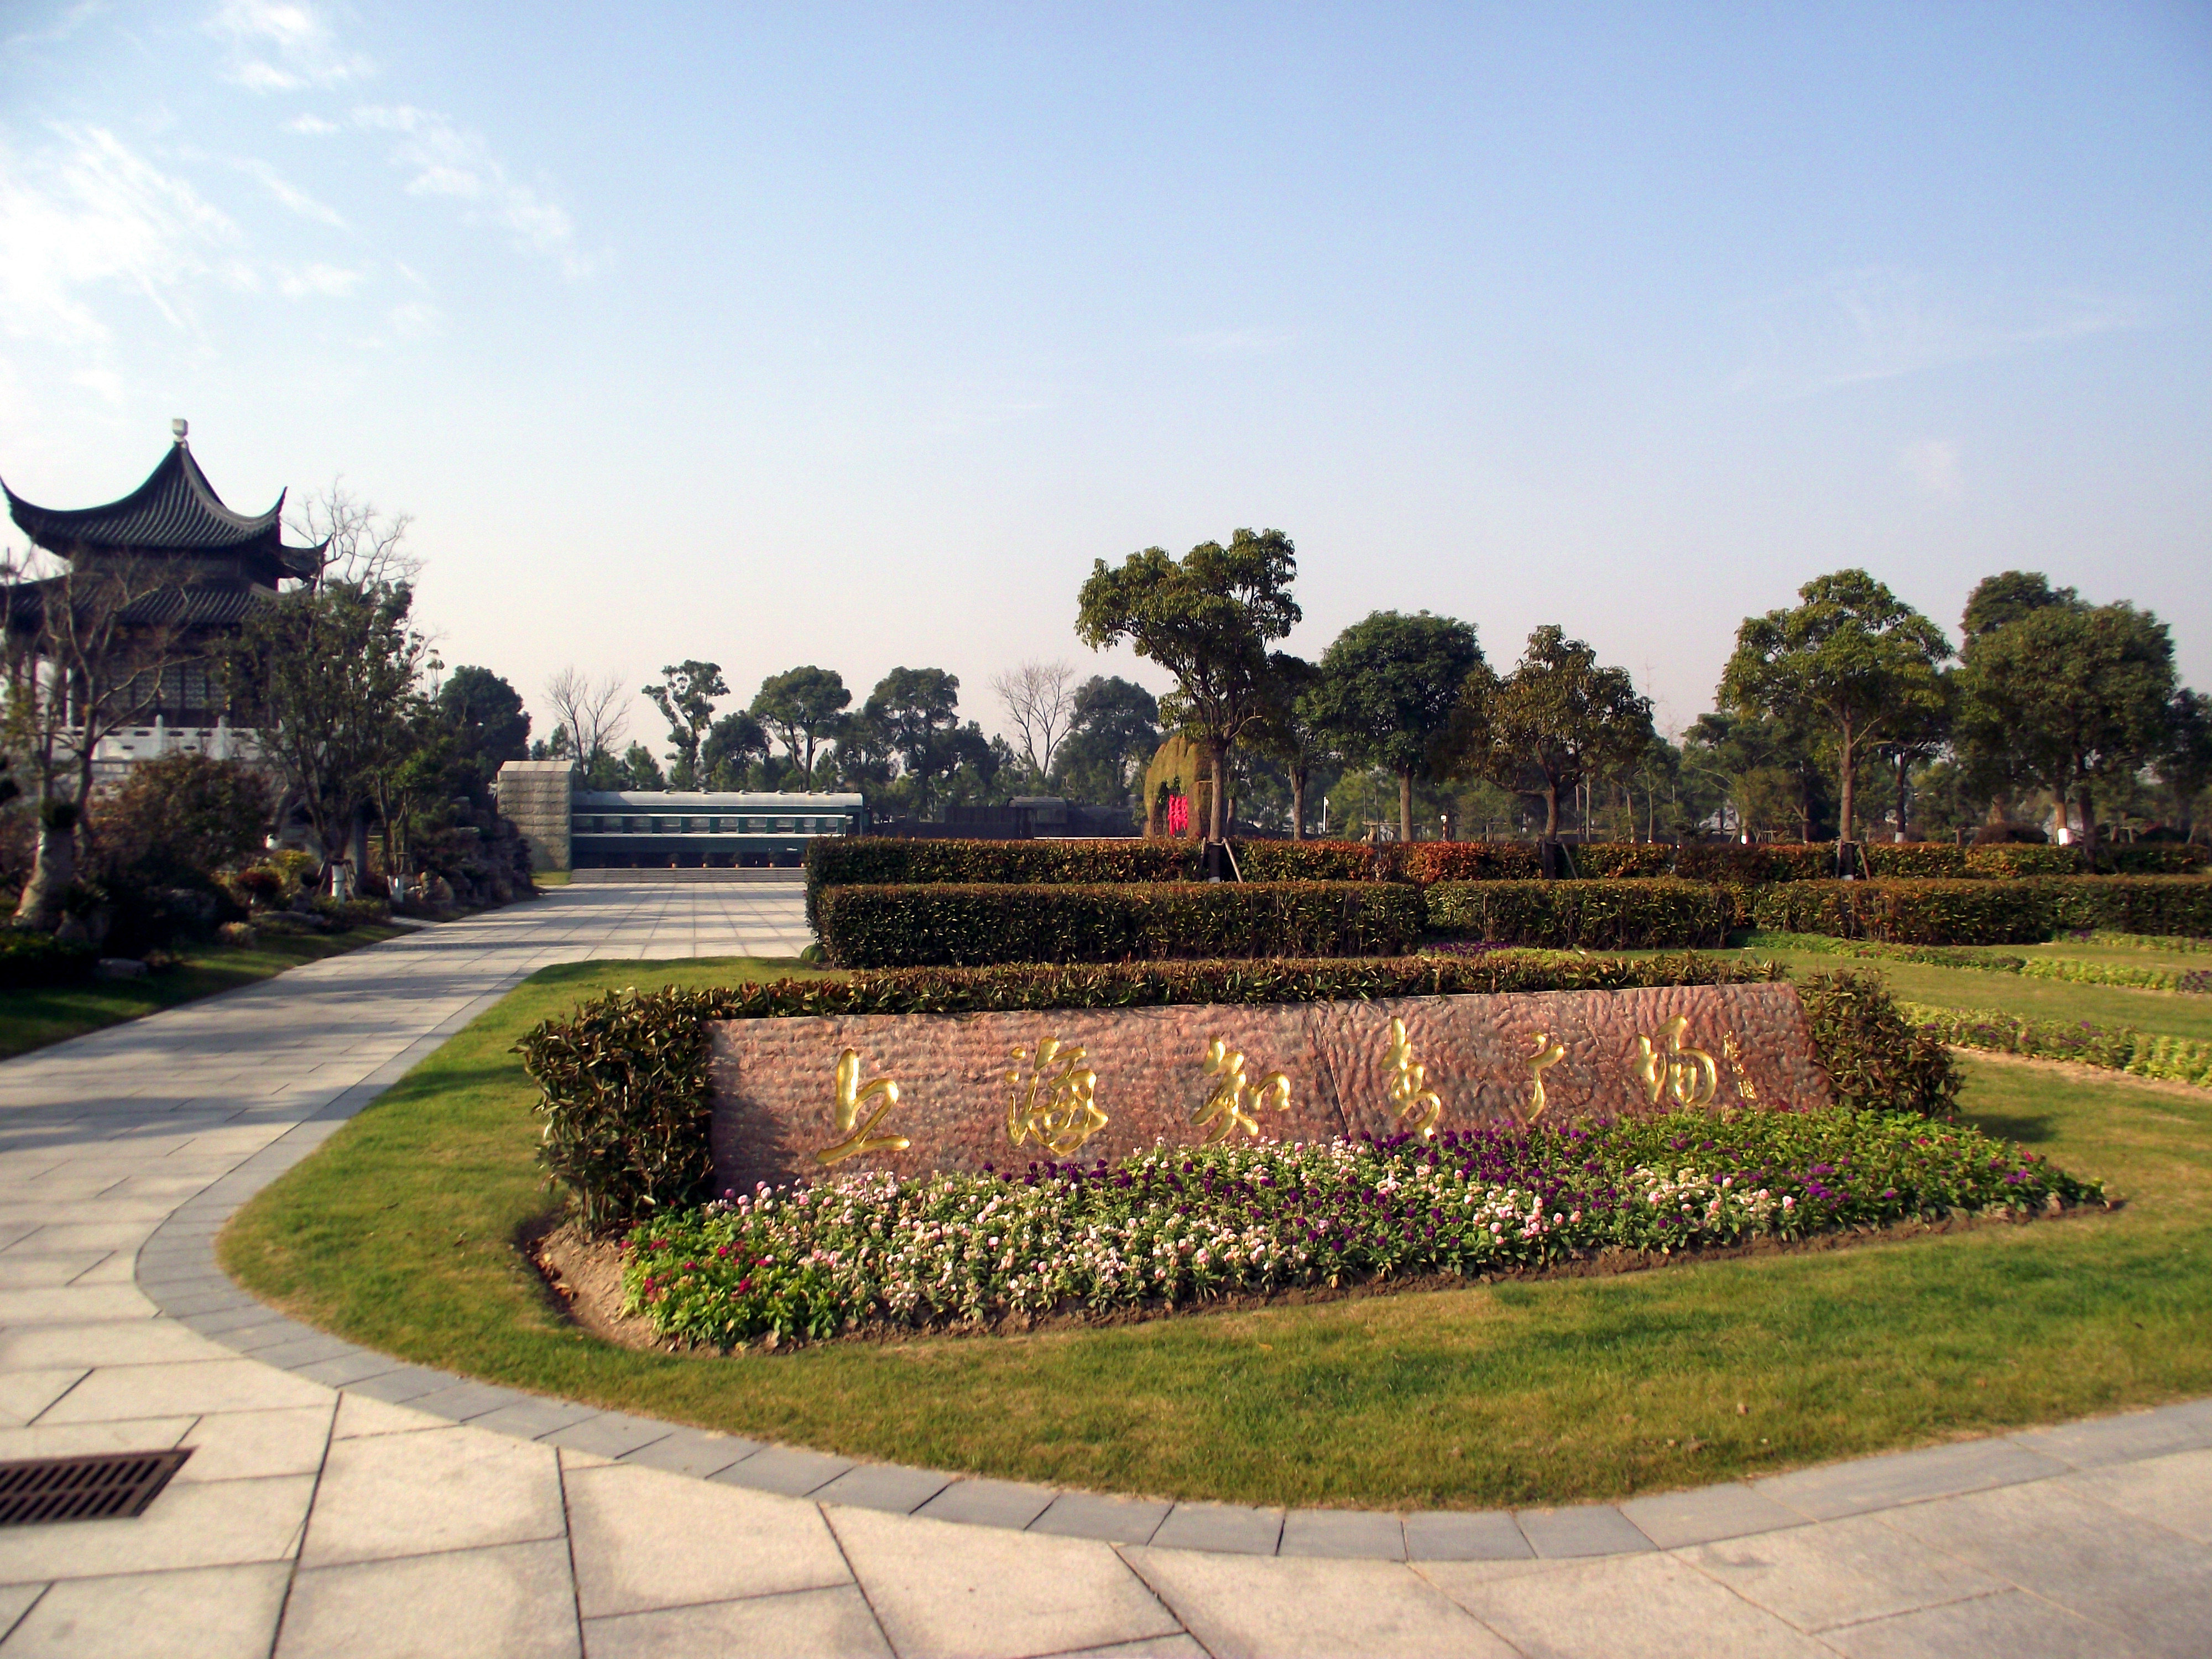 海湾园里设有上海知青博物馆,知青广场,通过参观浏览可以了解